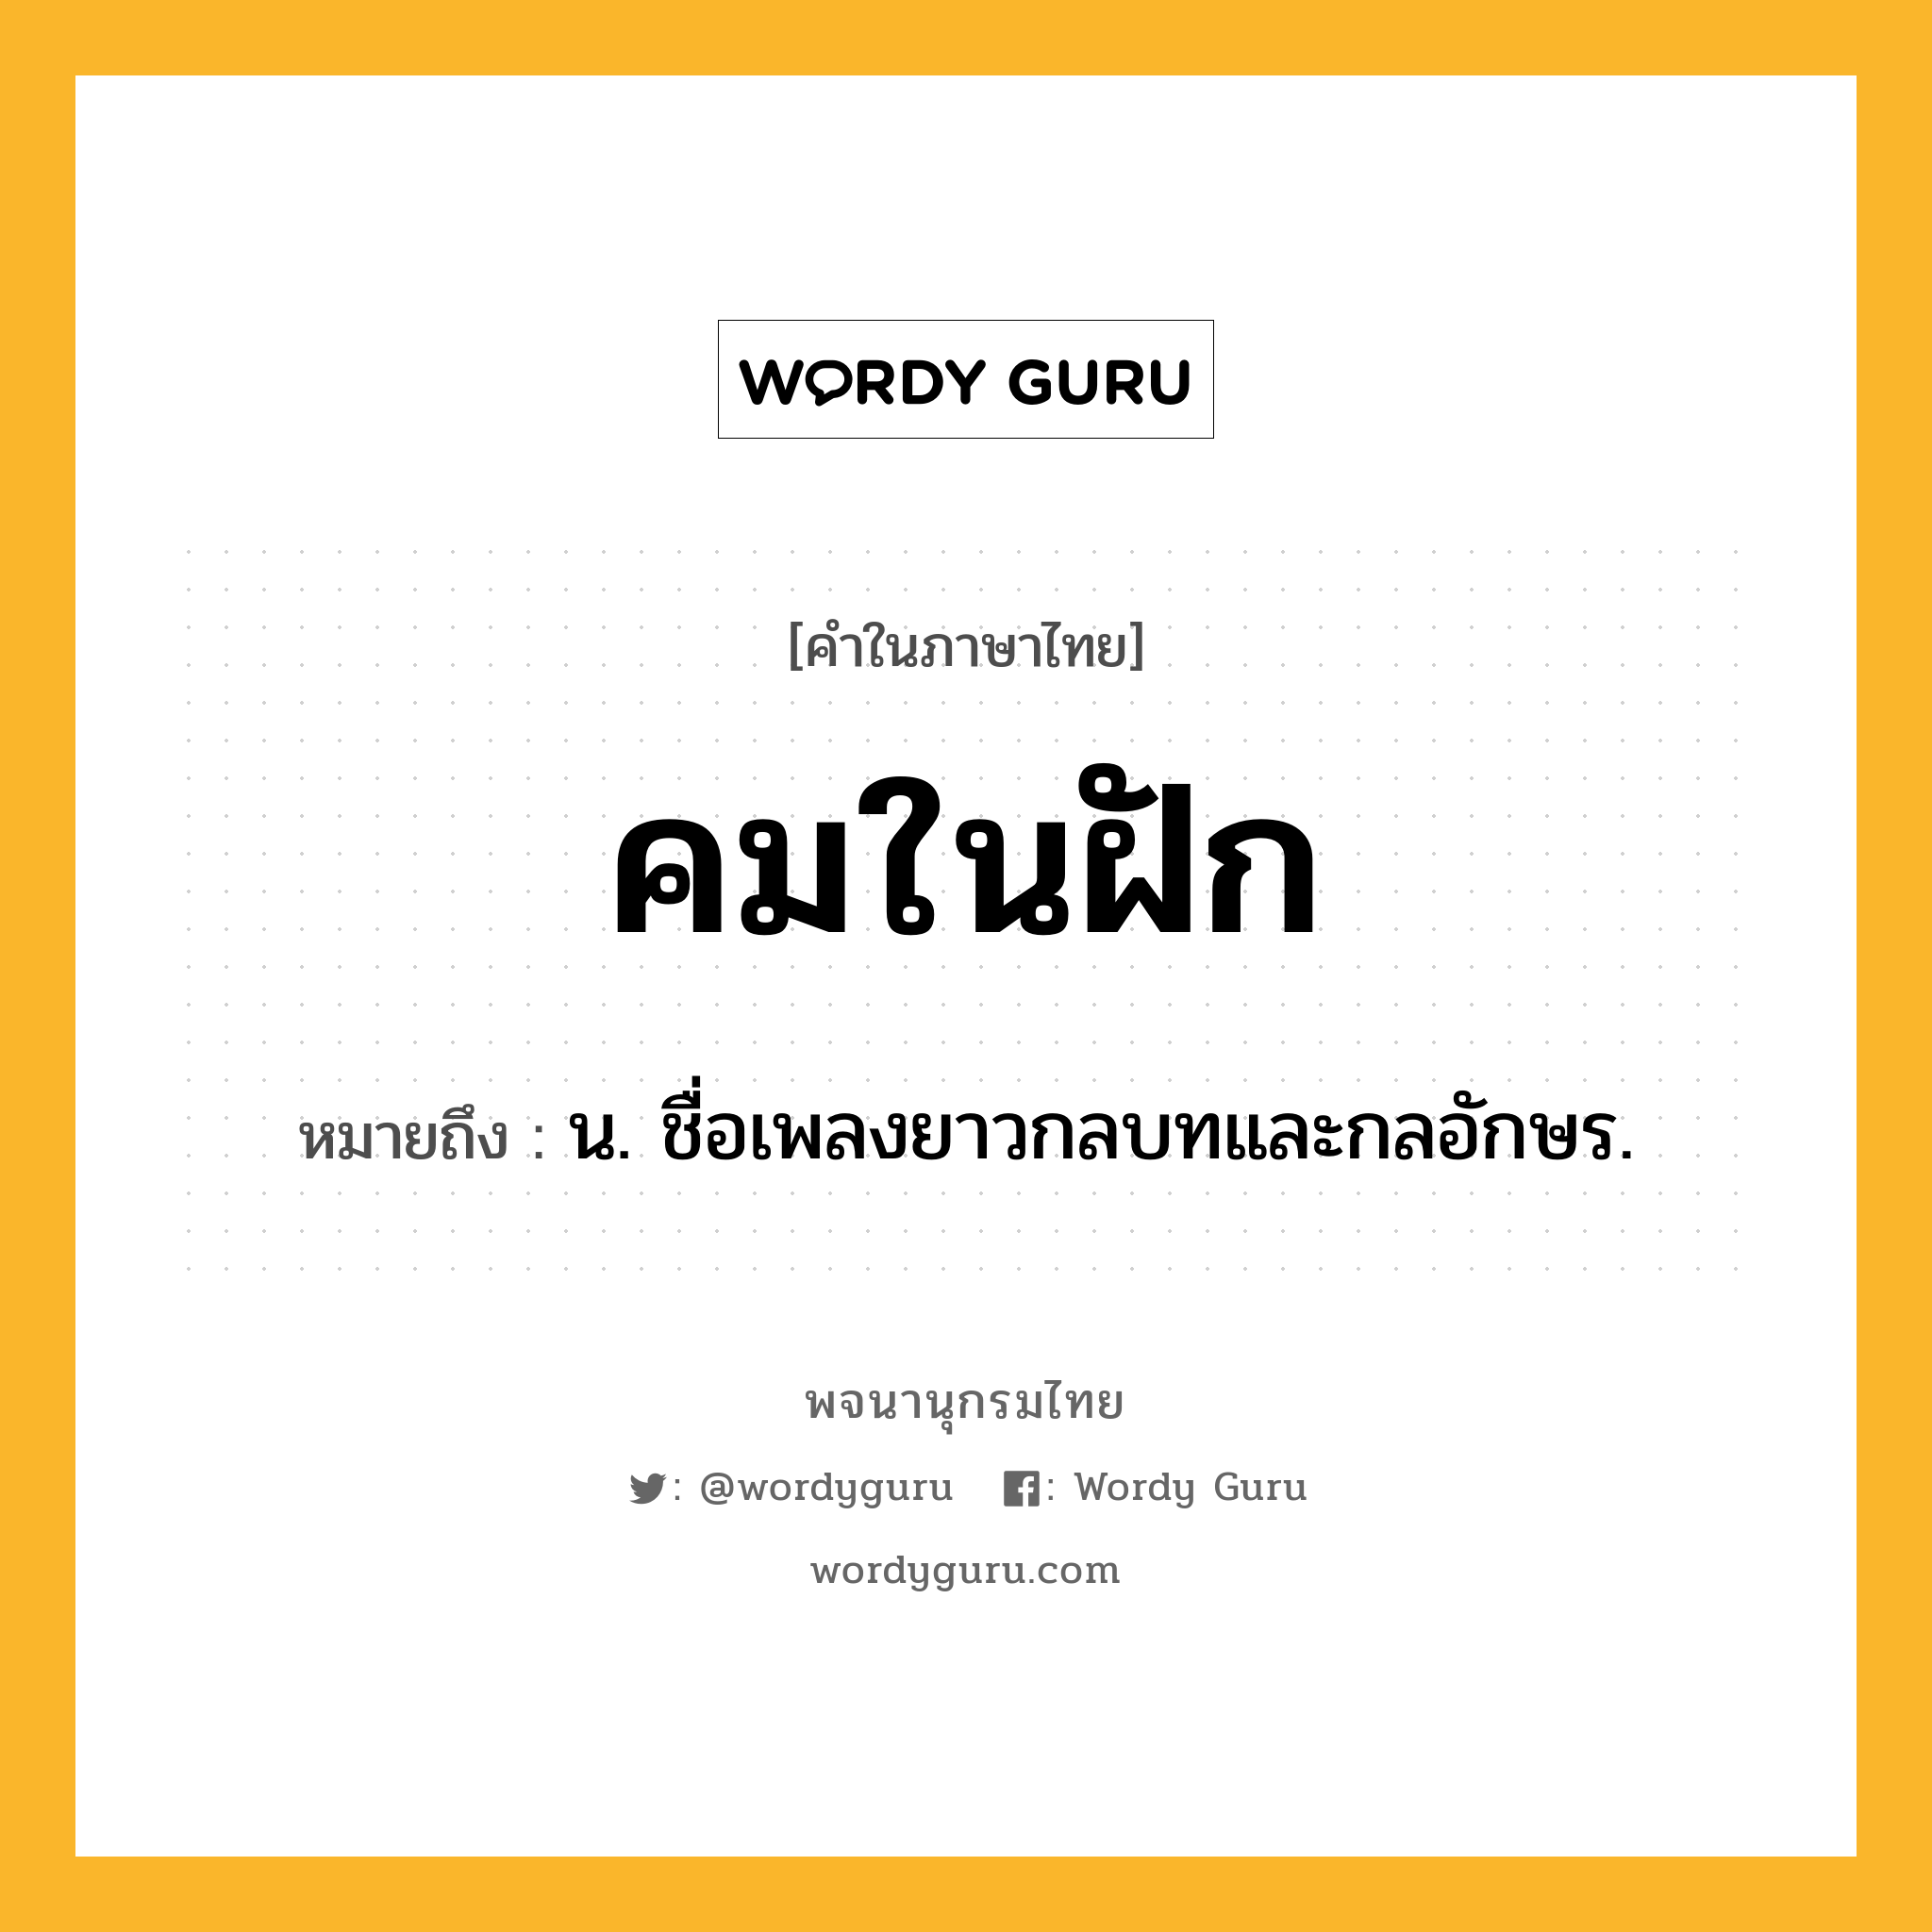 คมในฝัก ความหมาย หมายถึงอะไร?, คำในภาษาไทย คมในฝัก หมายถึง น. ชื่อเพลงยาวกลบทและกลอักษร.